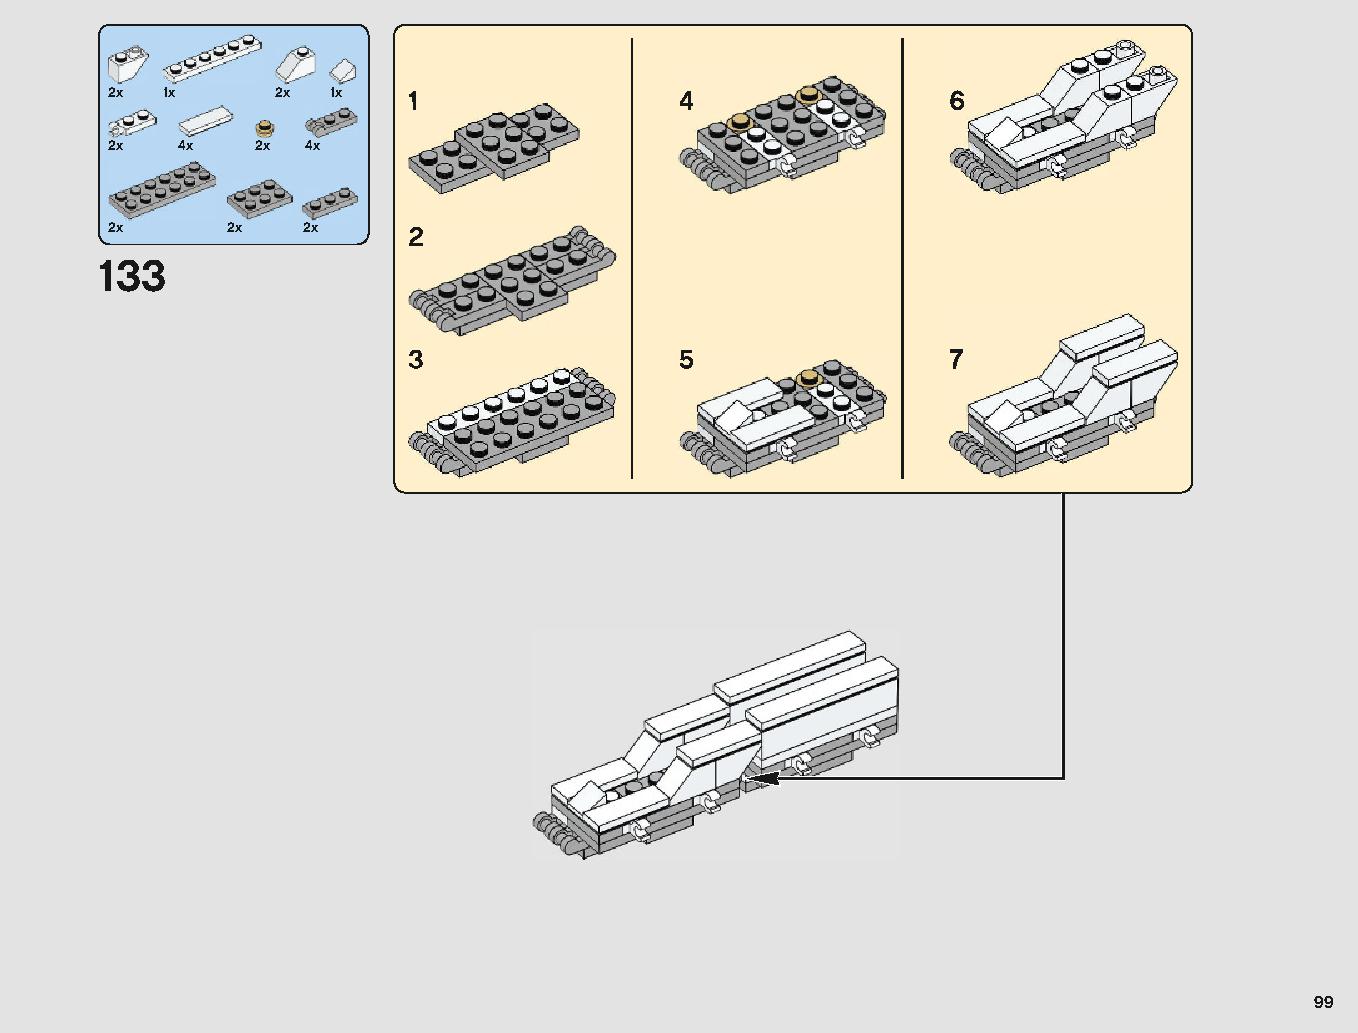 ミレニアム・ファルコン 75212 レゴの商品情報 レゴの説明書・組立方法 99 page